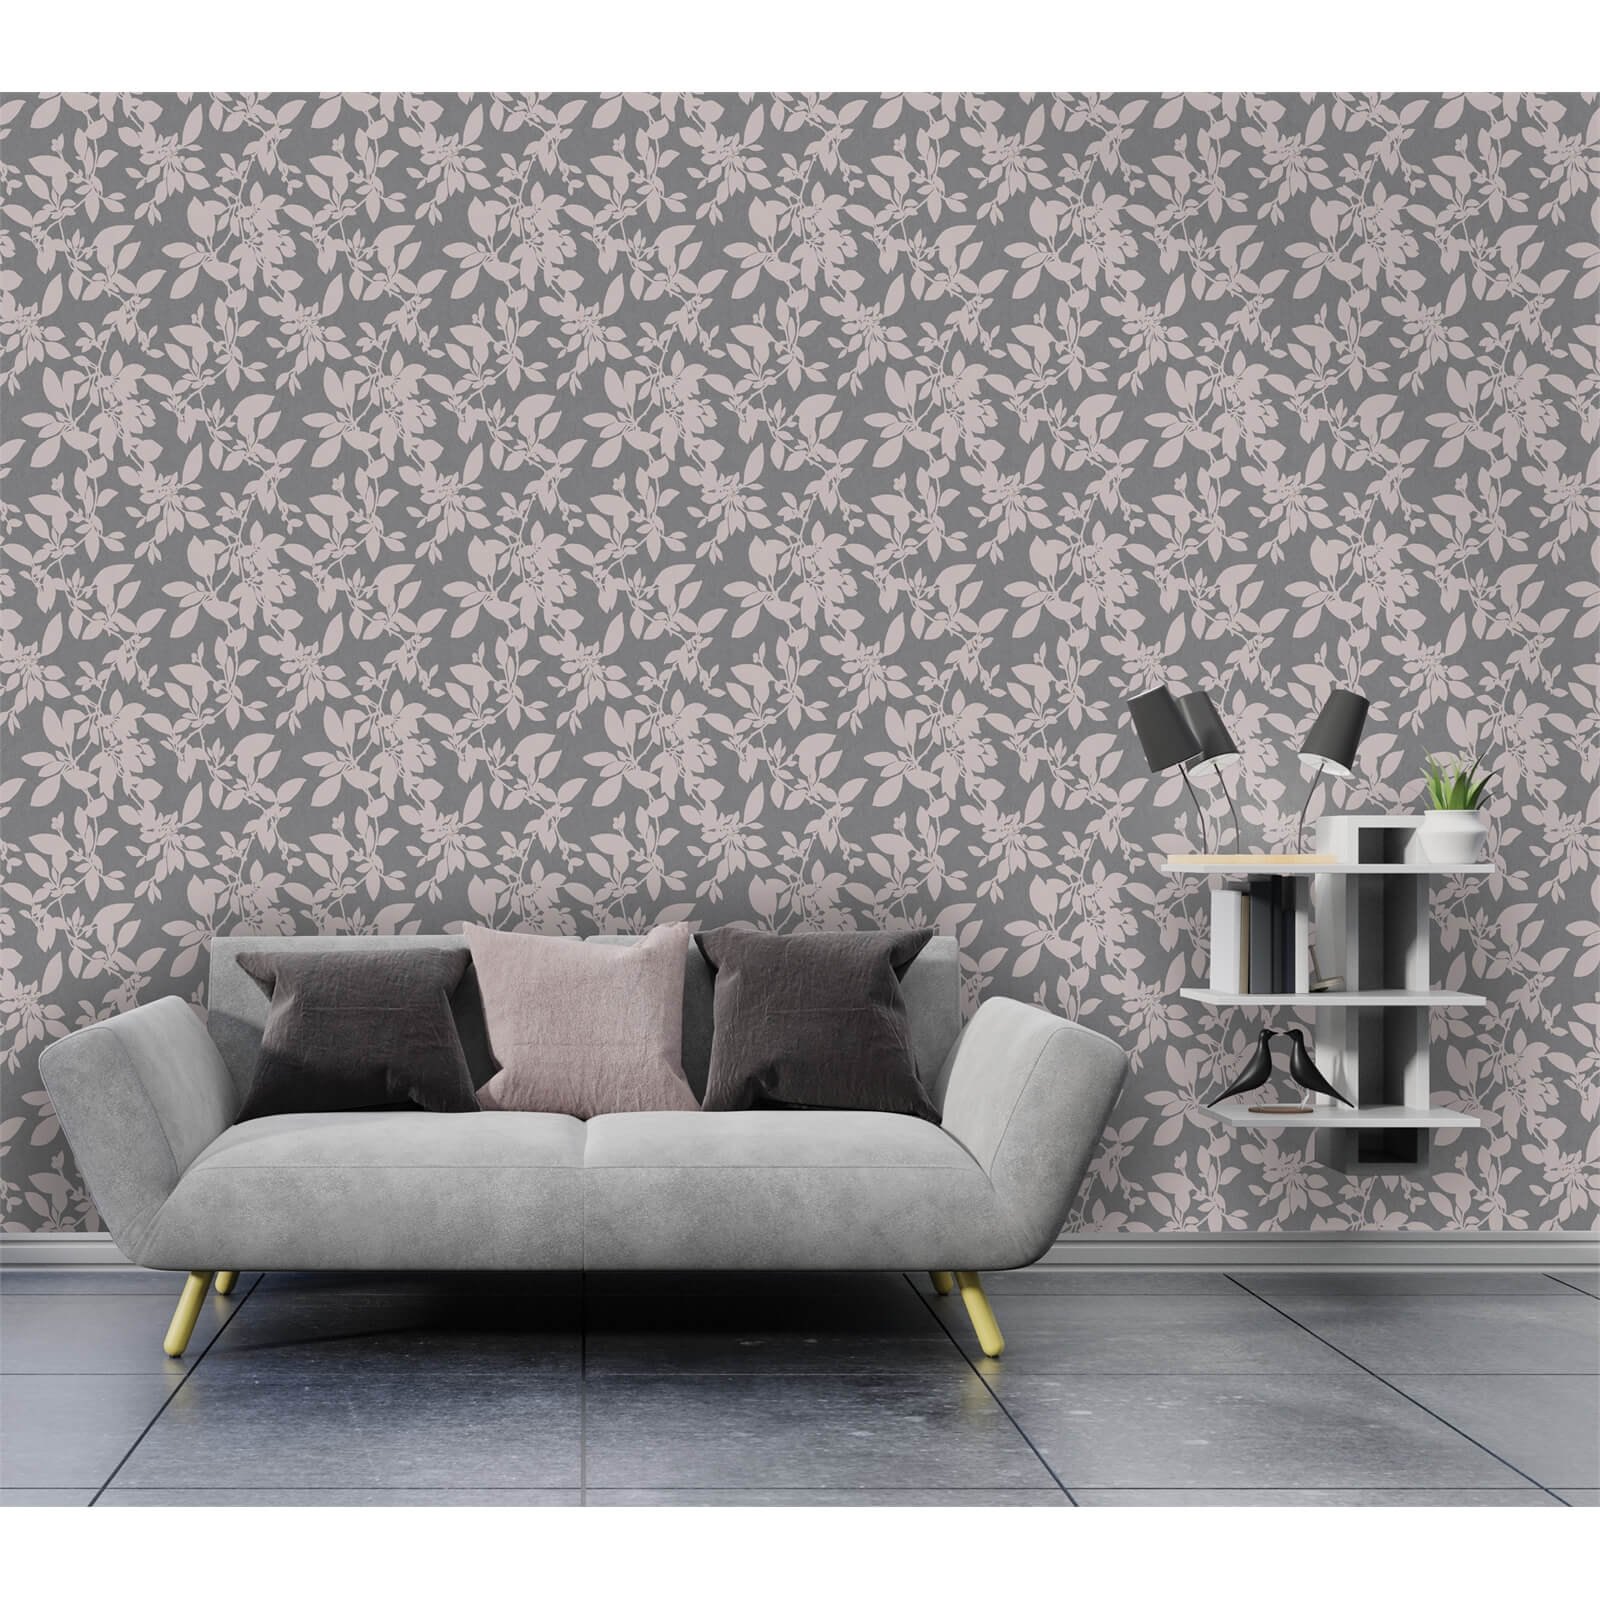 Holden Decor Linden Floral Textured Metallic Glitter Charcoal Pink Wallpaper